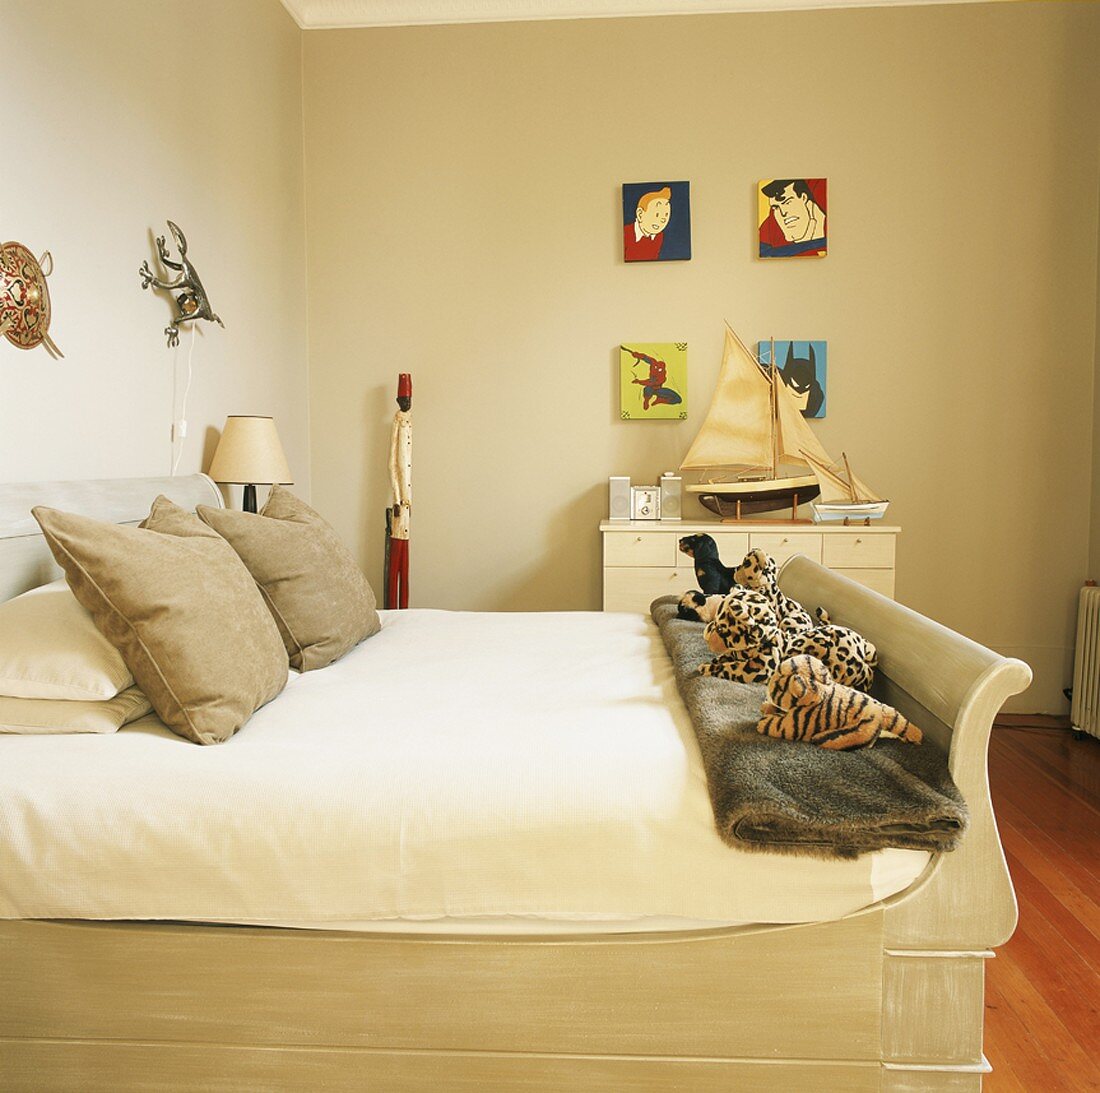 Doppelbett mit Stofftieren am Bettende und Comicfiguren an der Wand eines Schlafzimmers